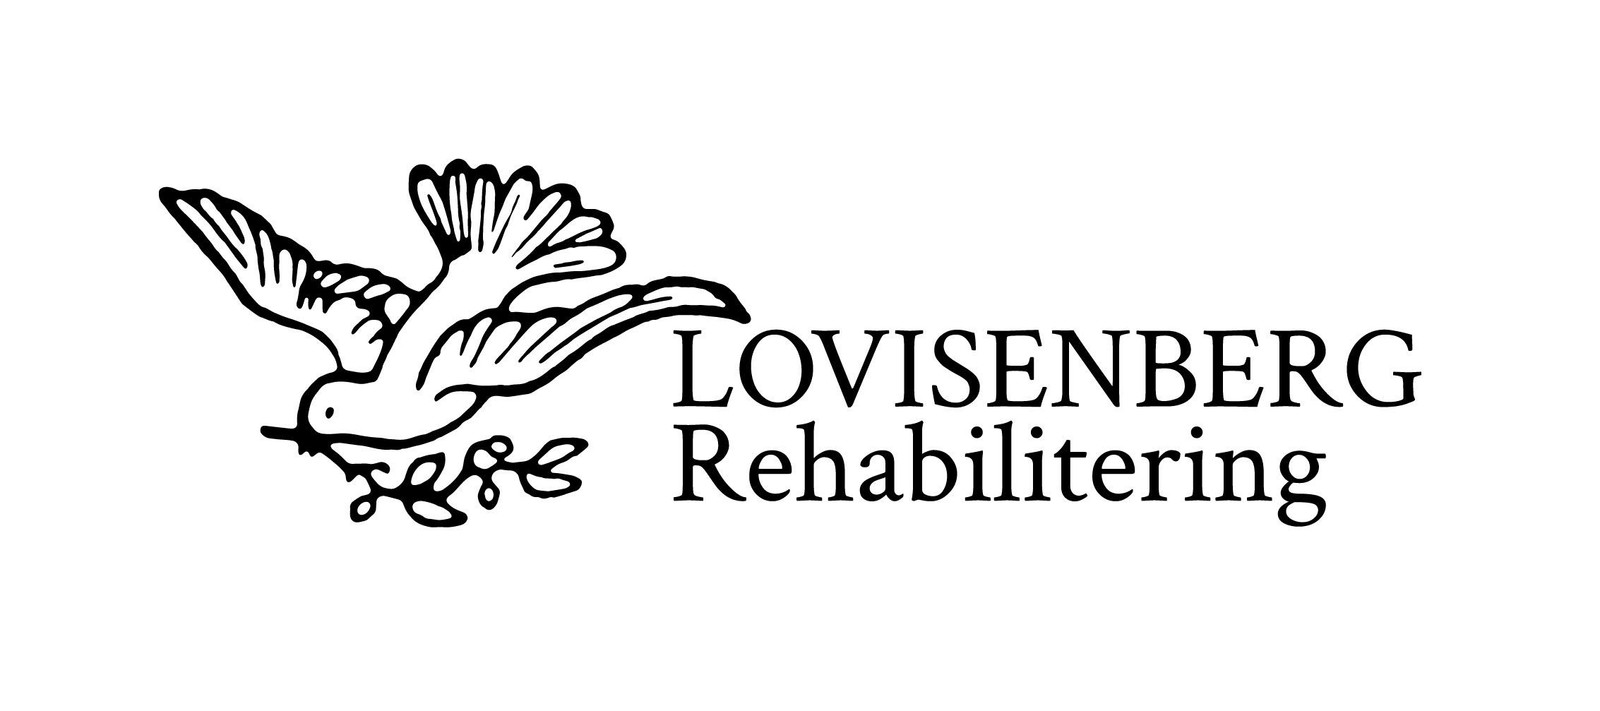 Lovisenberg Rehabilitering AS